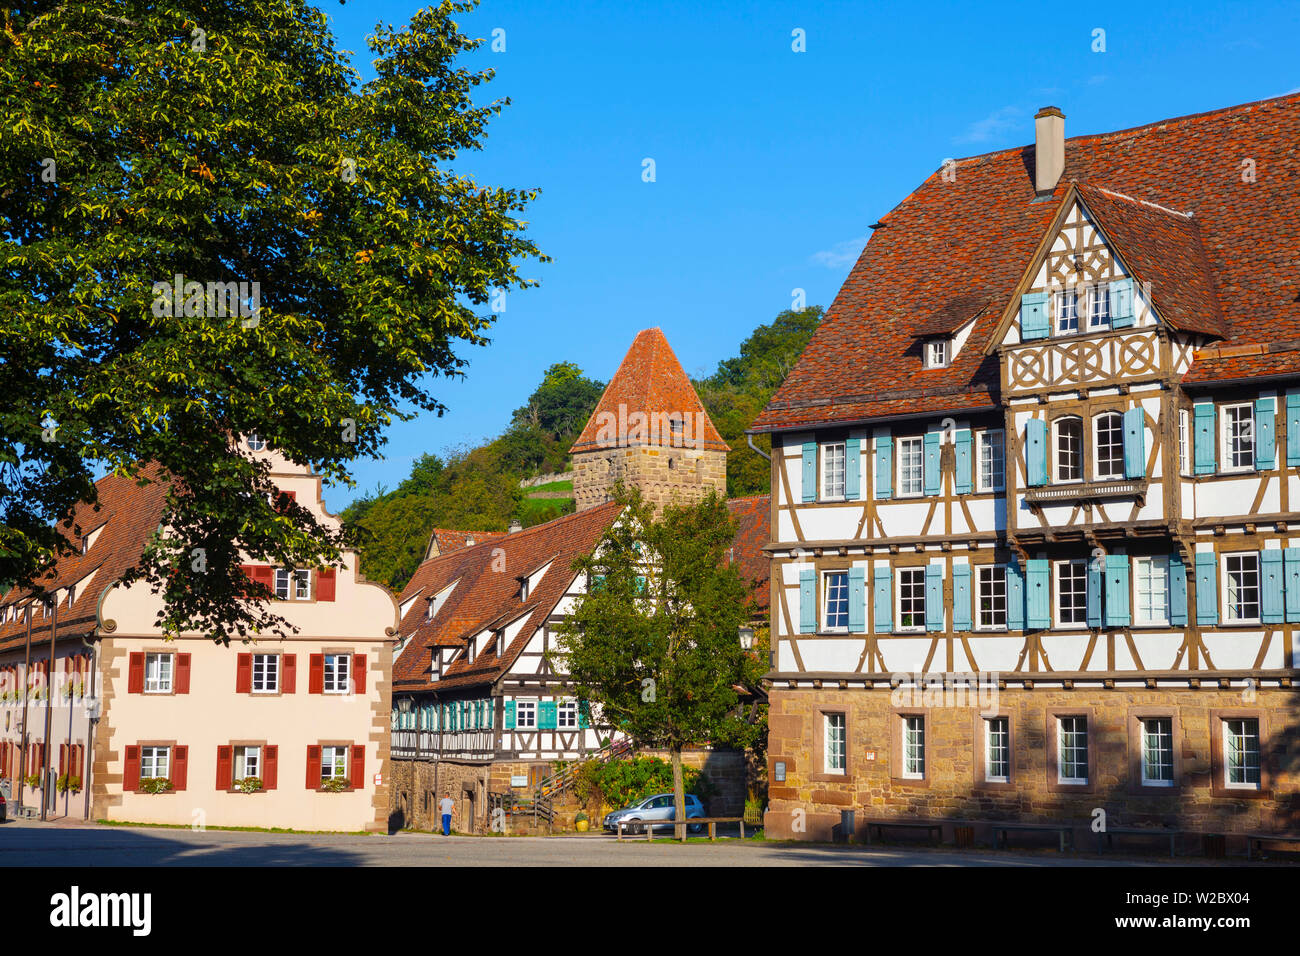 Fachwerkhäuser in der mittelalterlichen Zisterzienserkloster (Kloster Maulbronn) als Weltkulturerbe der UNESCO, Maulbronn, Baden Württemberg, Deutschland Stockfoto